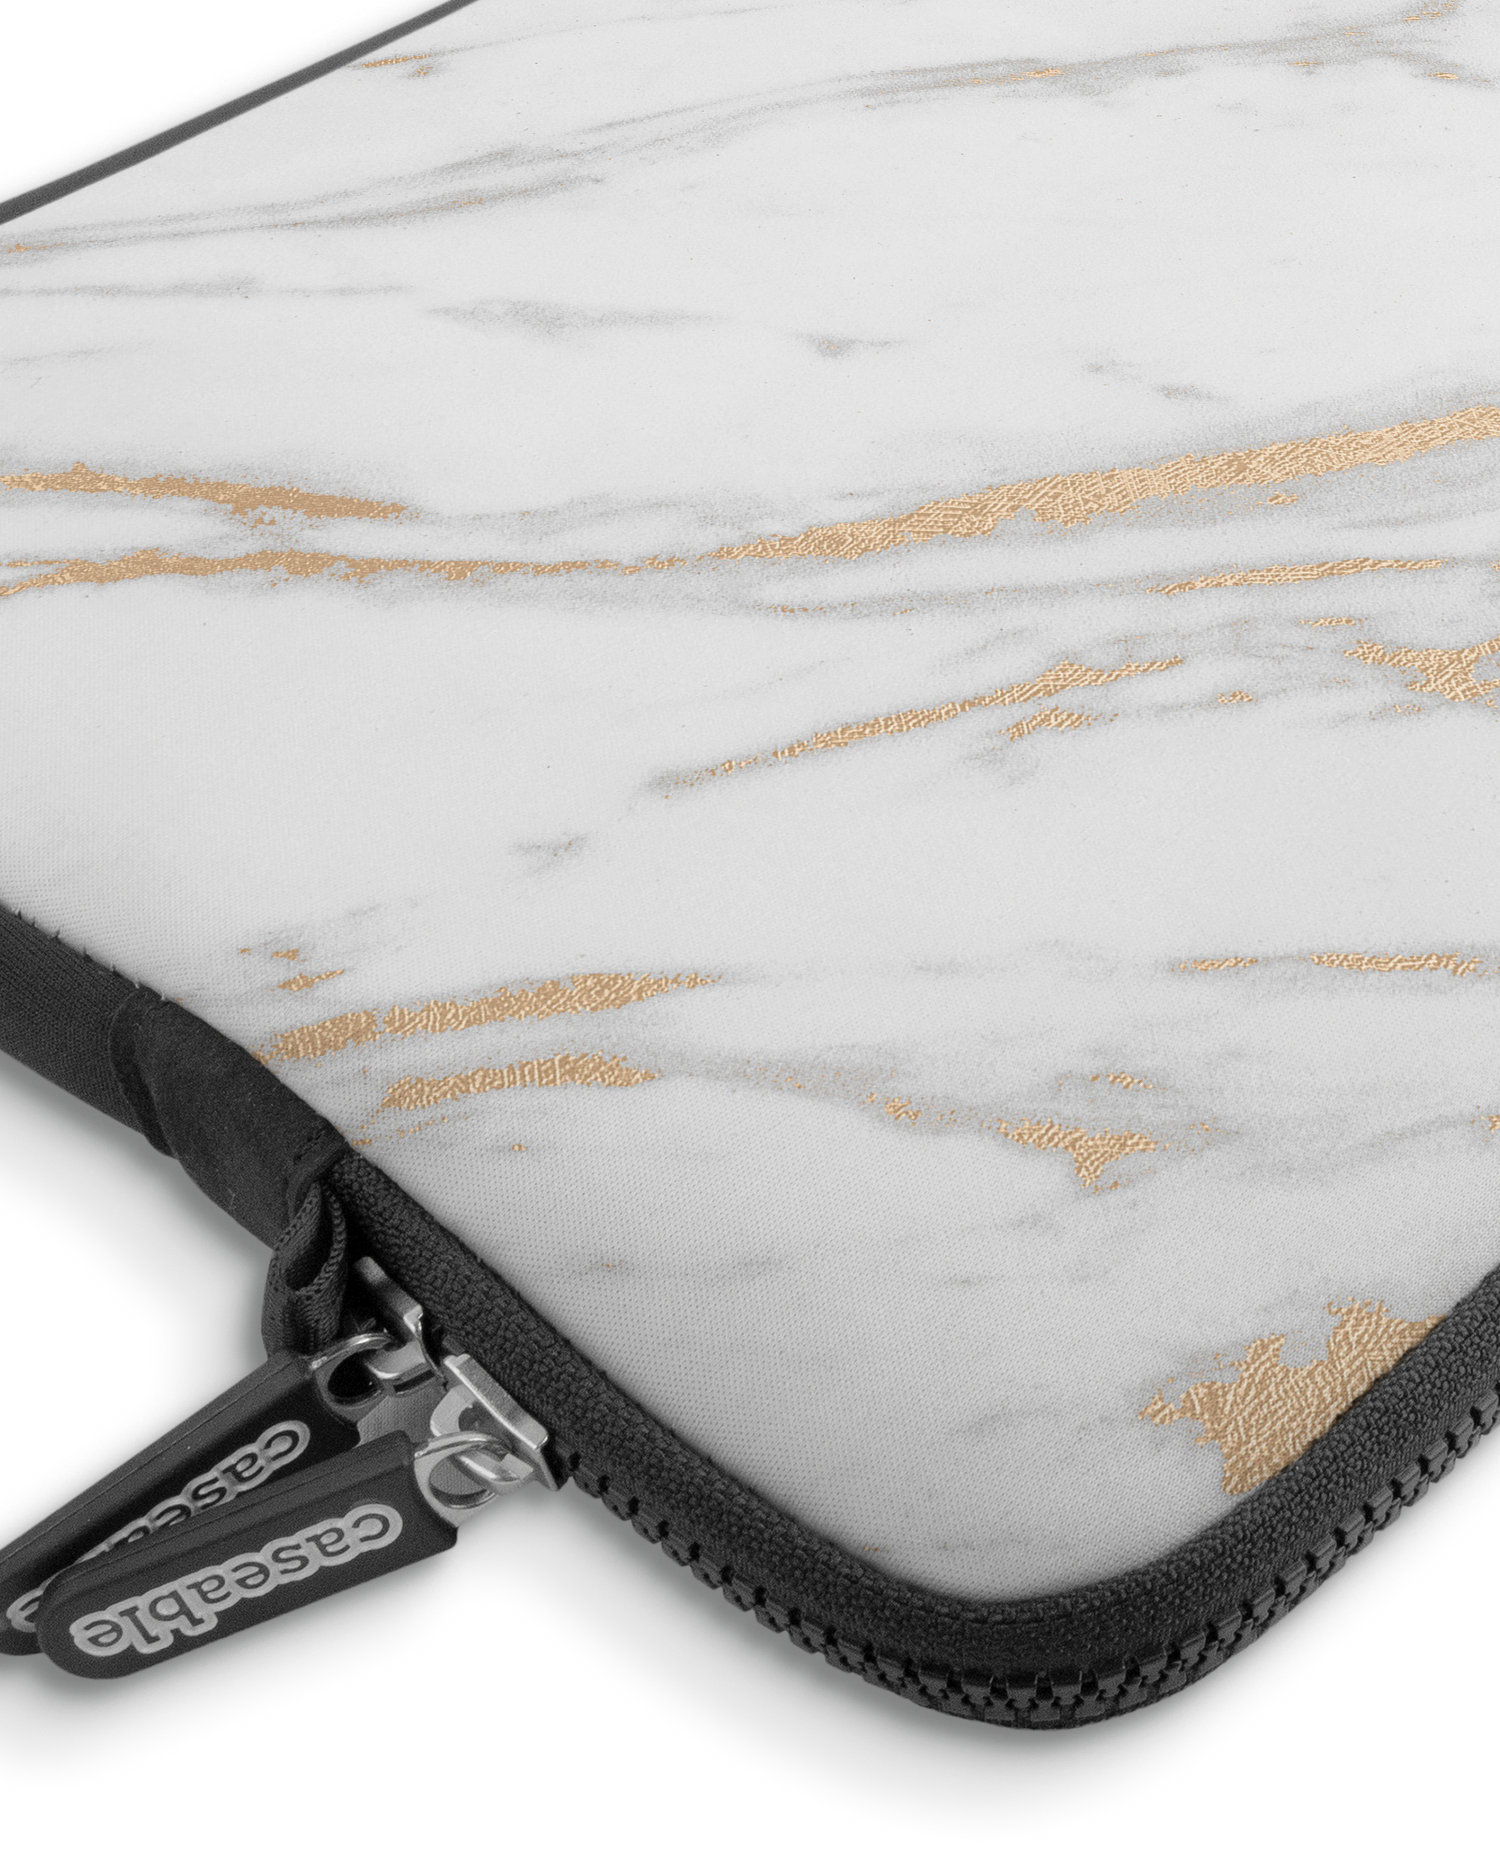 Gold Marble Elegance Premium Laptoptasche 13-14 Zoll mit Gerät im Inneren